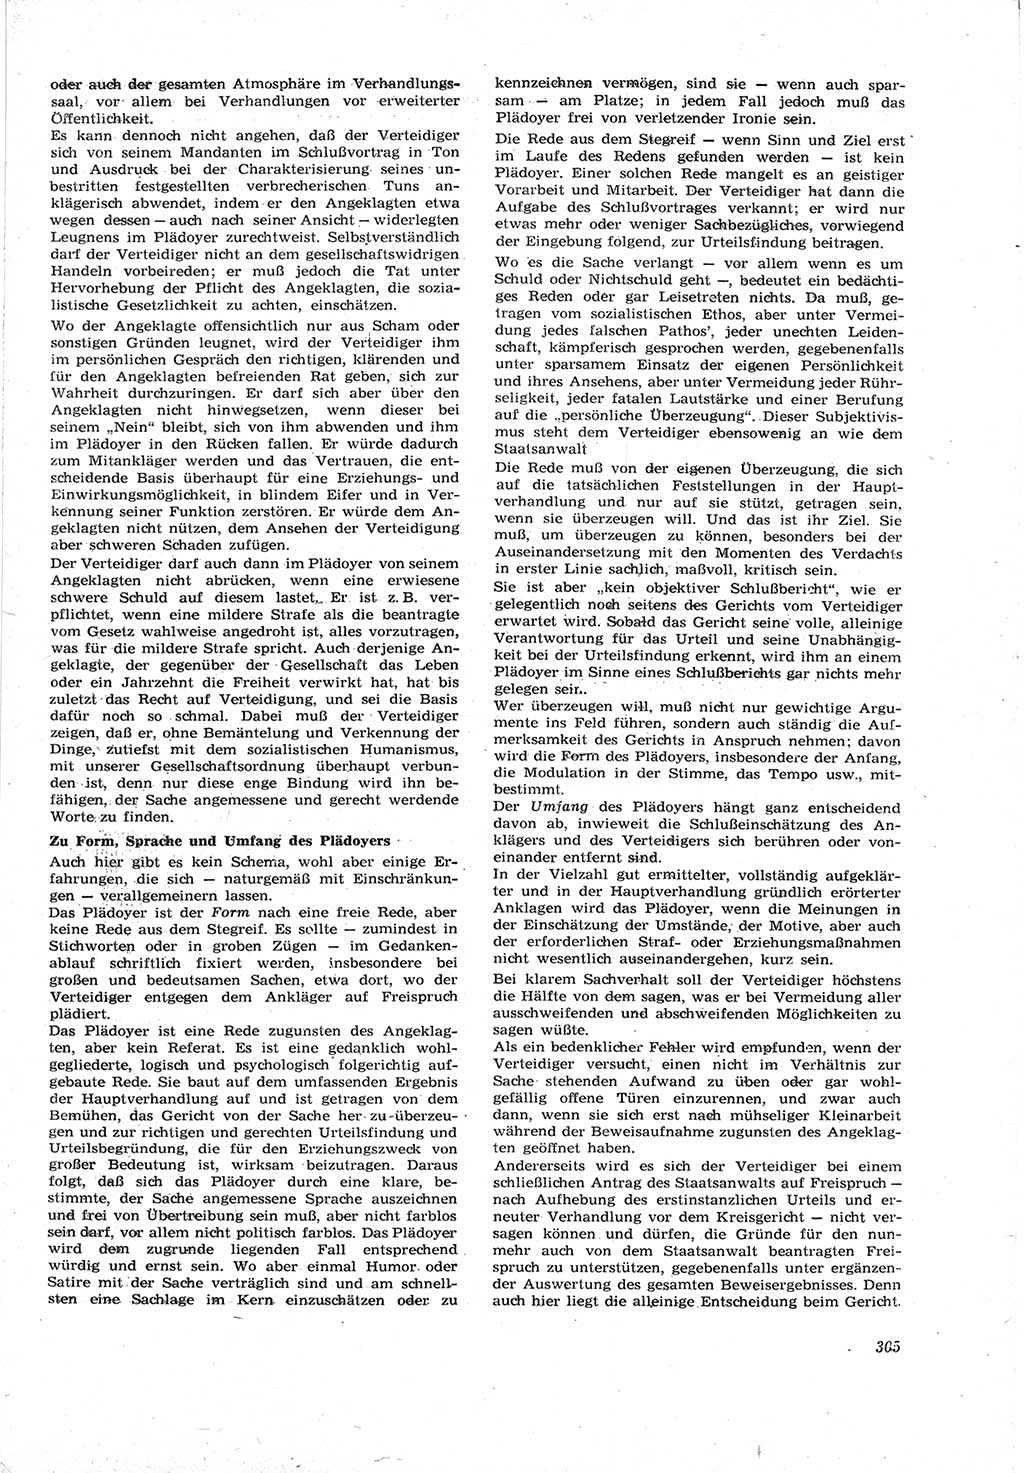 Neue Justiz (NJ), Zeitschrift für Recht und Rechtswissenschaft [Deutsche Demokratische Republik (DDR)], 17. Jahrgang 1963, Seite 305 (NJ DDR 1963, S. 305)